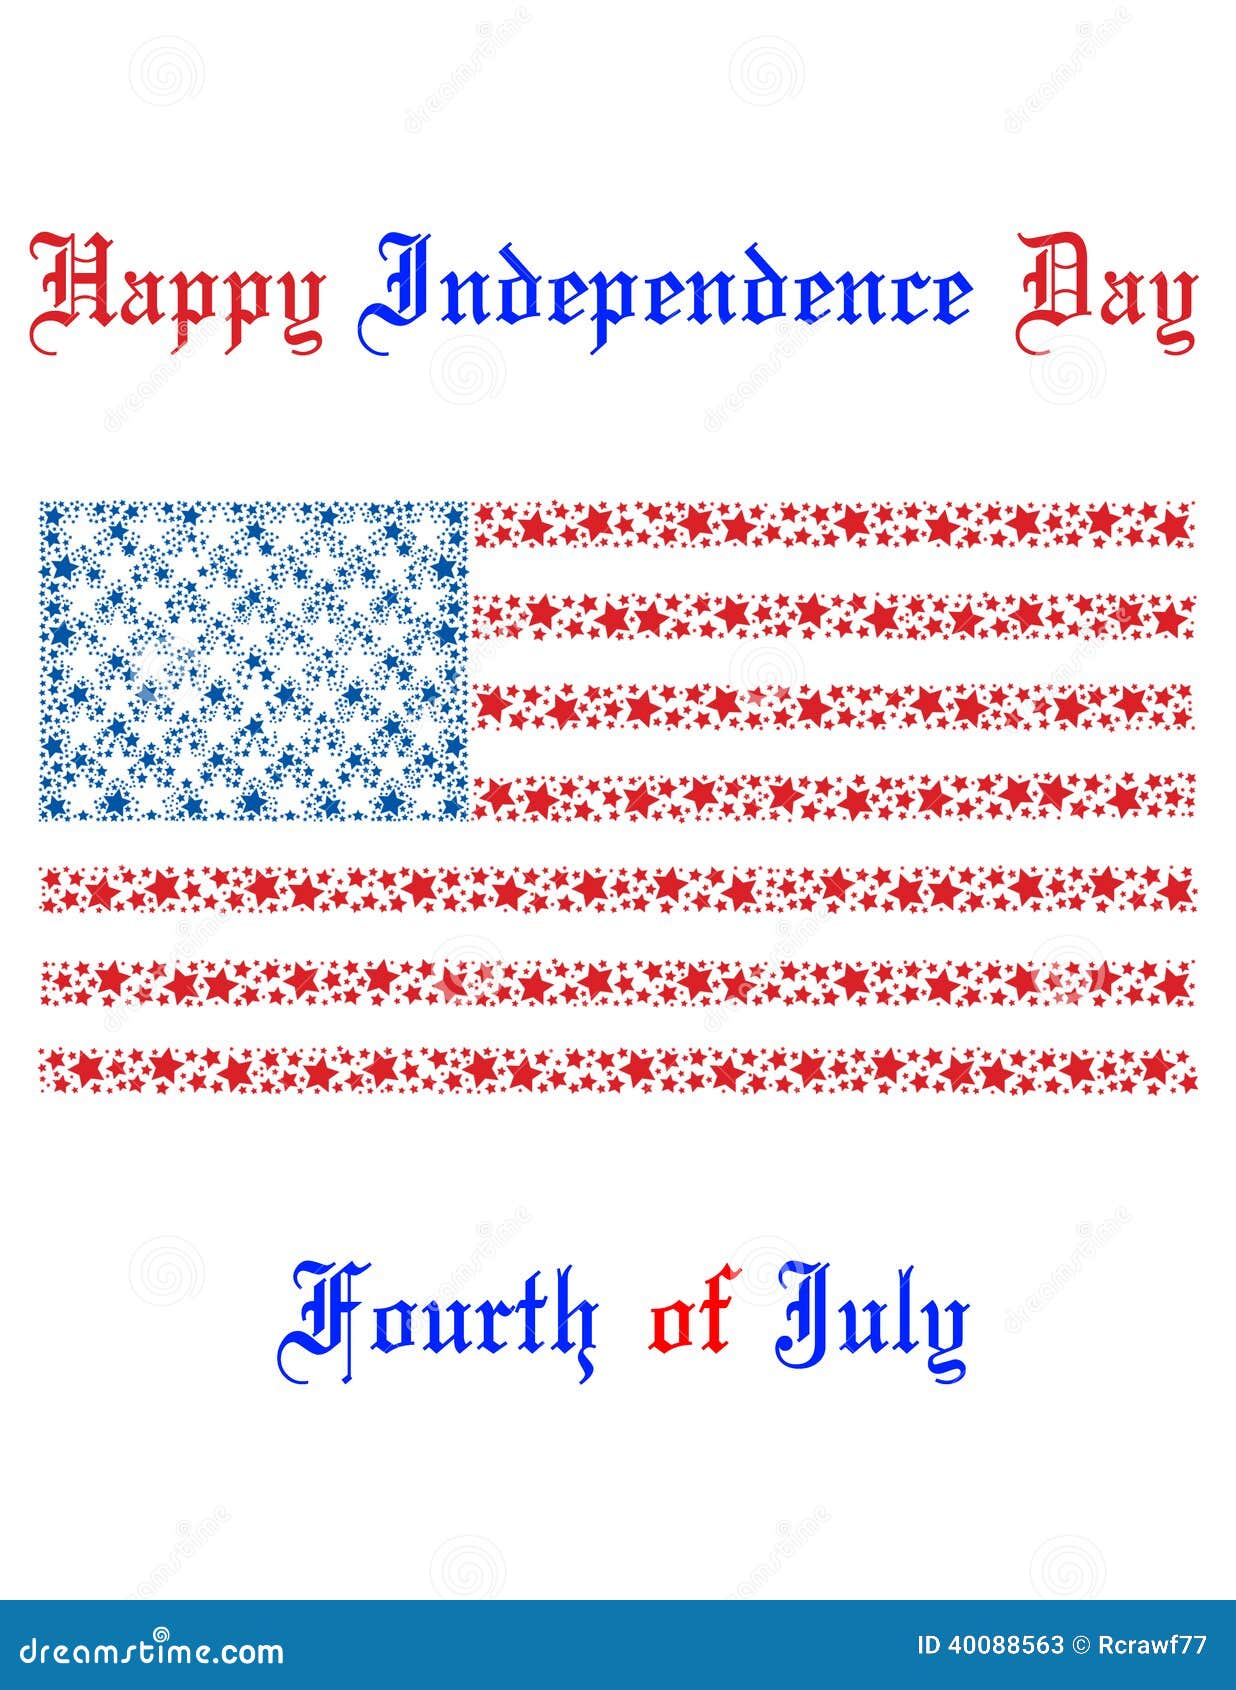 Unabhängigkeitstag in Amerika. Eine amerikanische Unabhängigkeitstagkarte mit einer amerikanischen Flagge auf ihr.